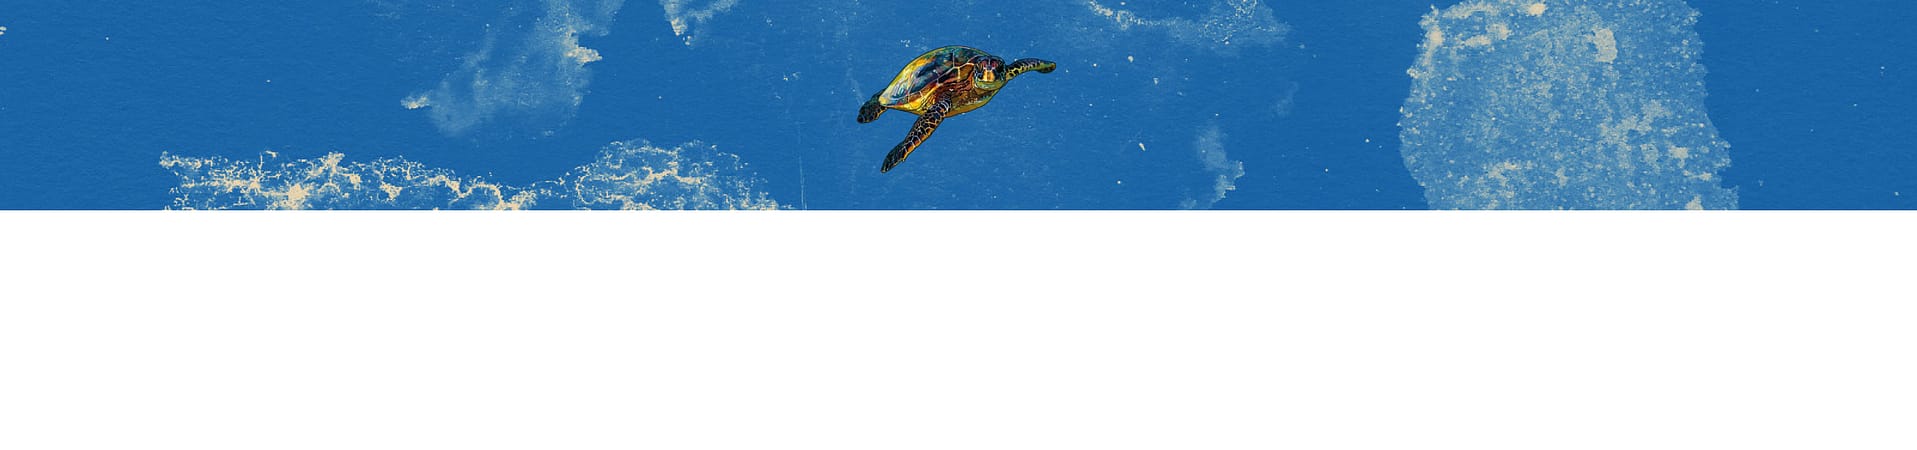 Karettschildkröte auf blauem Hintergründ